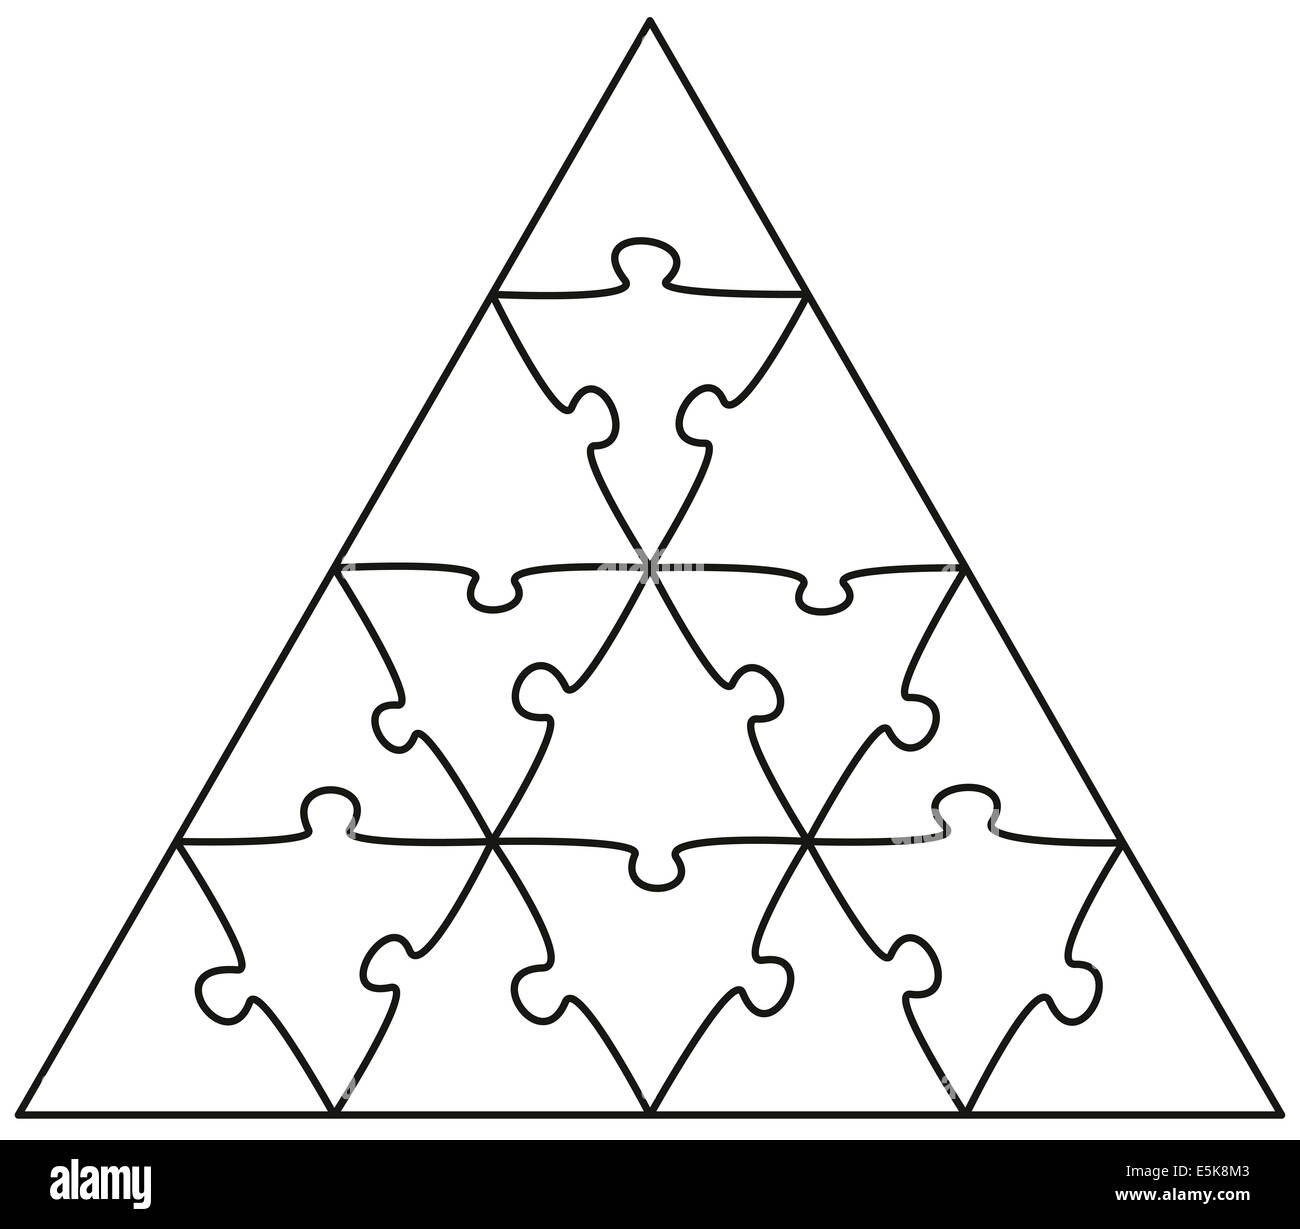 Jigsaw Puzzle Triangle - illustration on white background. Stock Photo